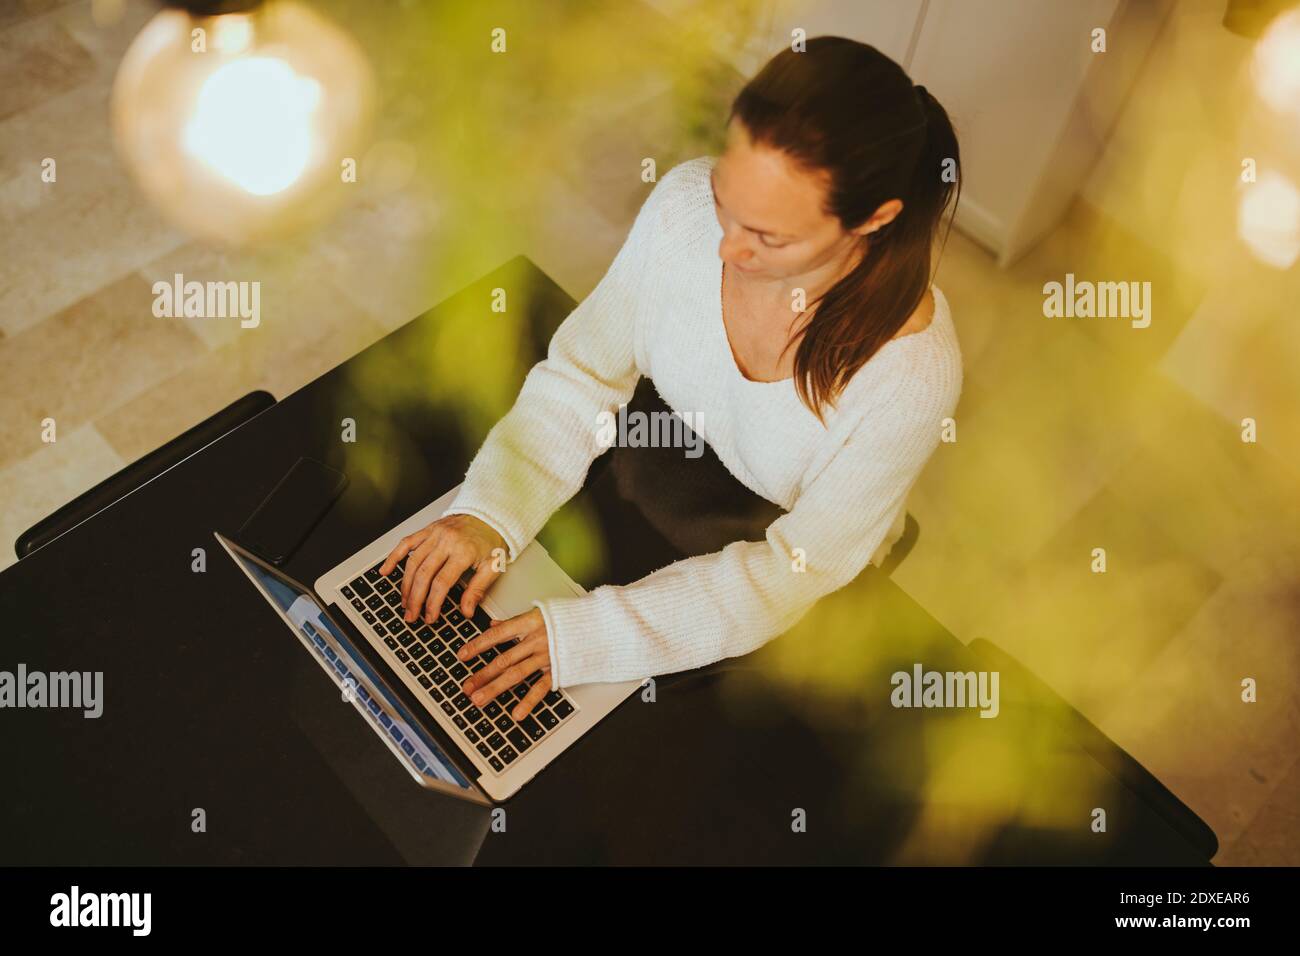 Femme utilisant un ordinateur portable à l'île de cuisine Banque D'Images